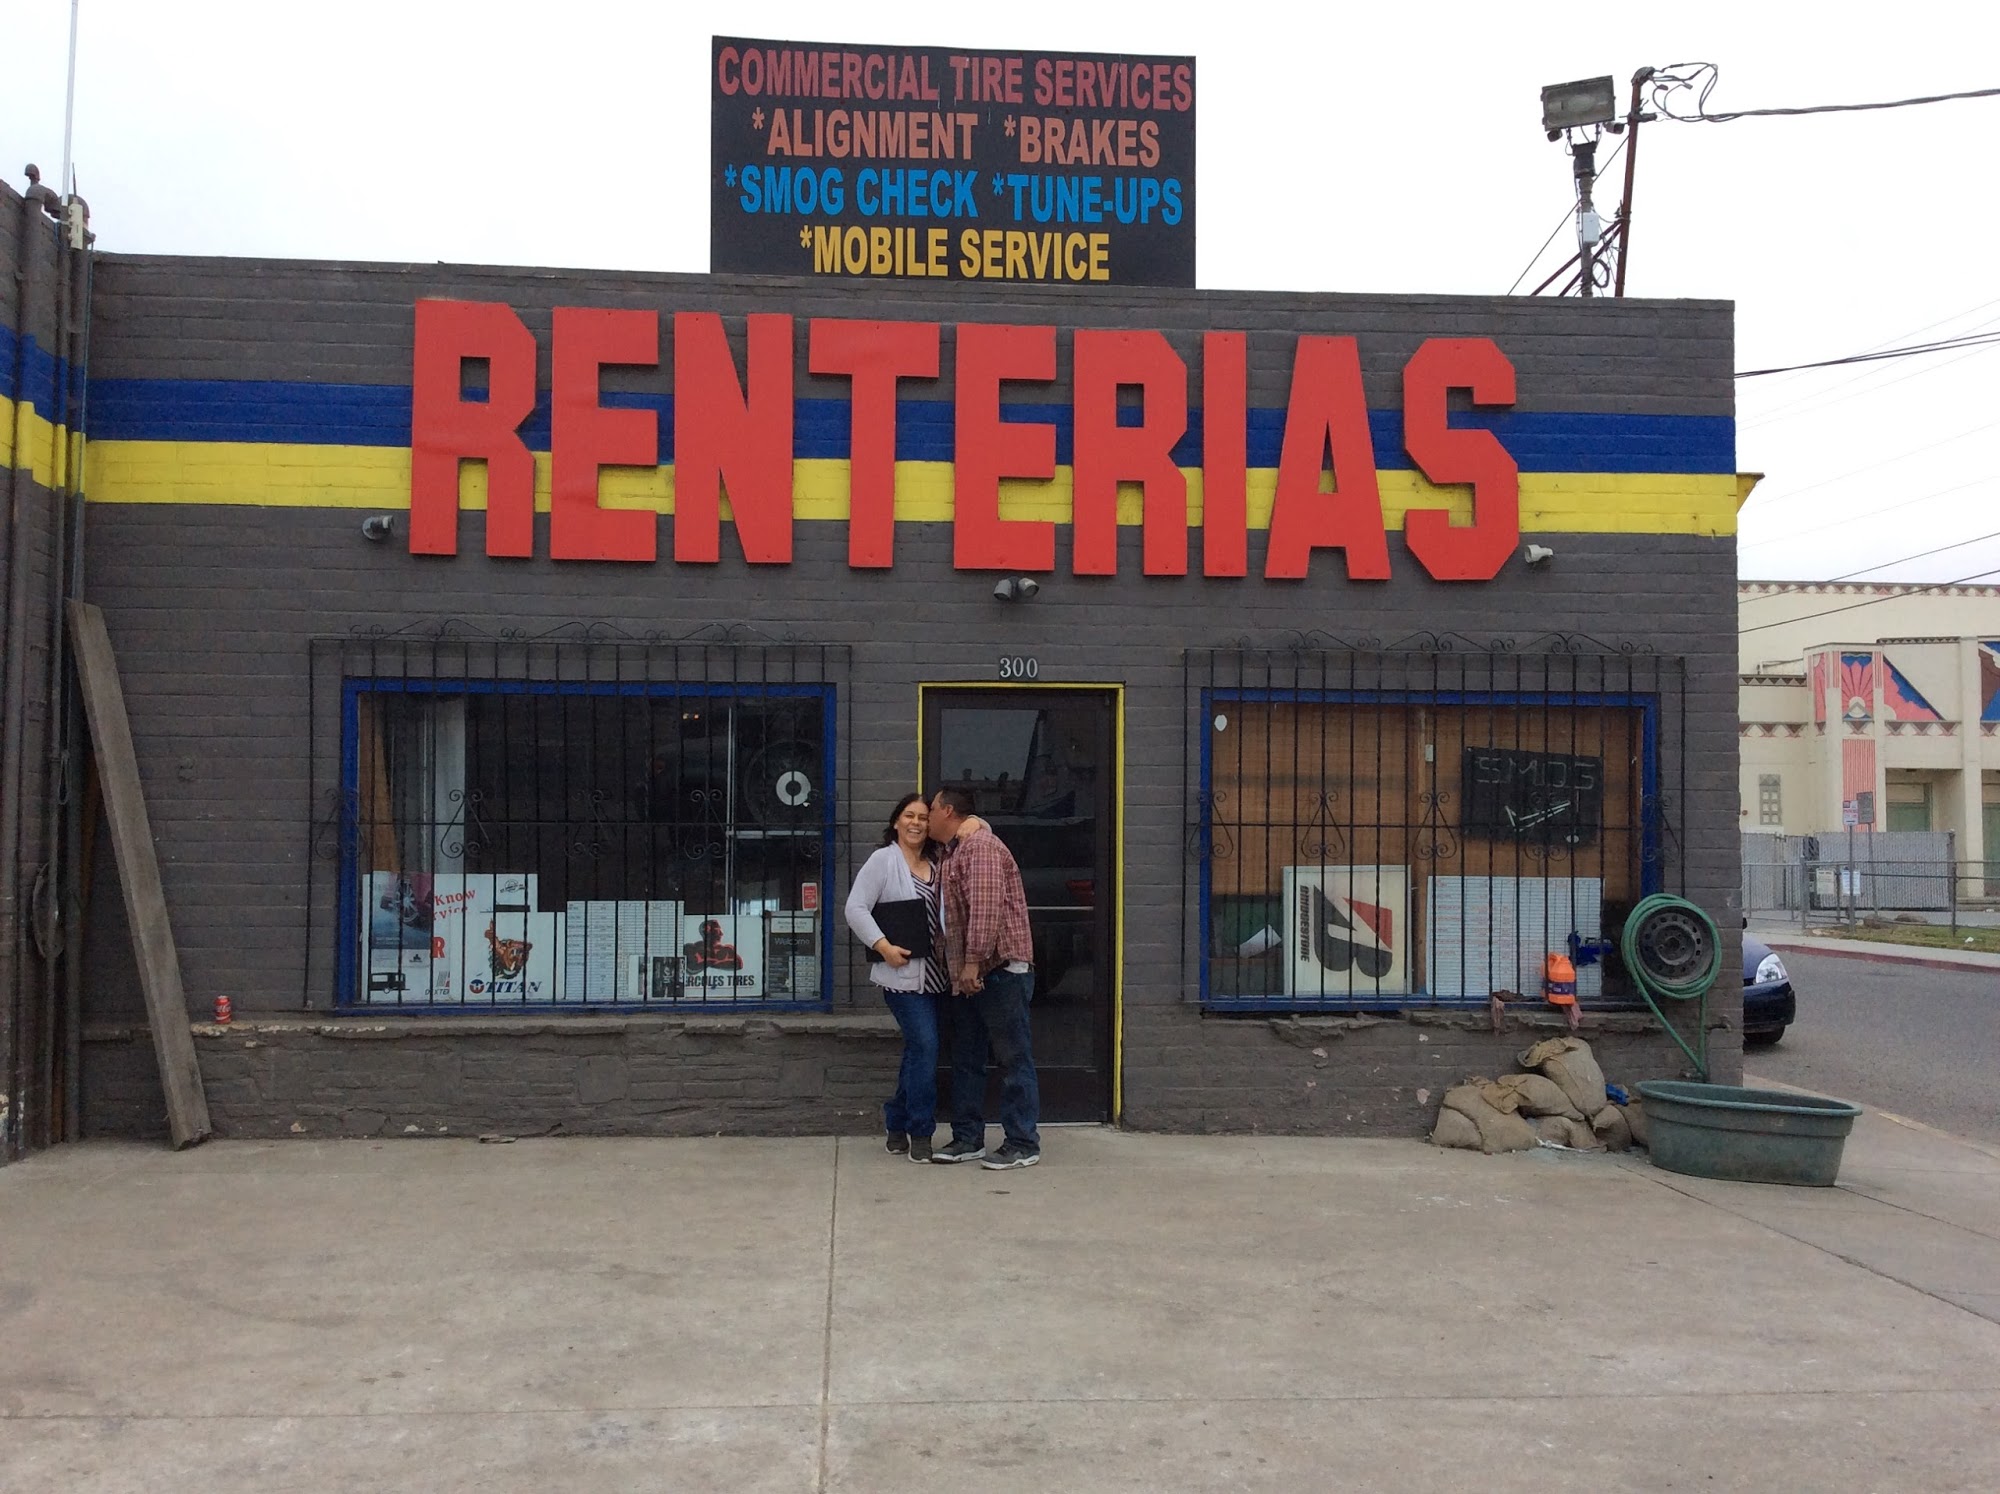 Renterias Tire Services